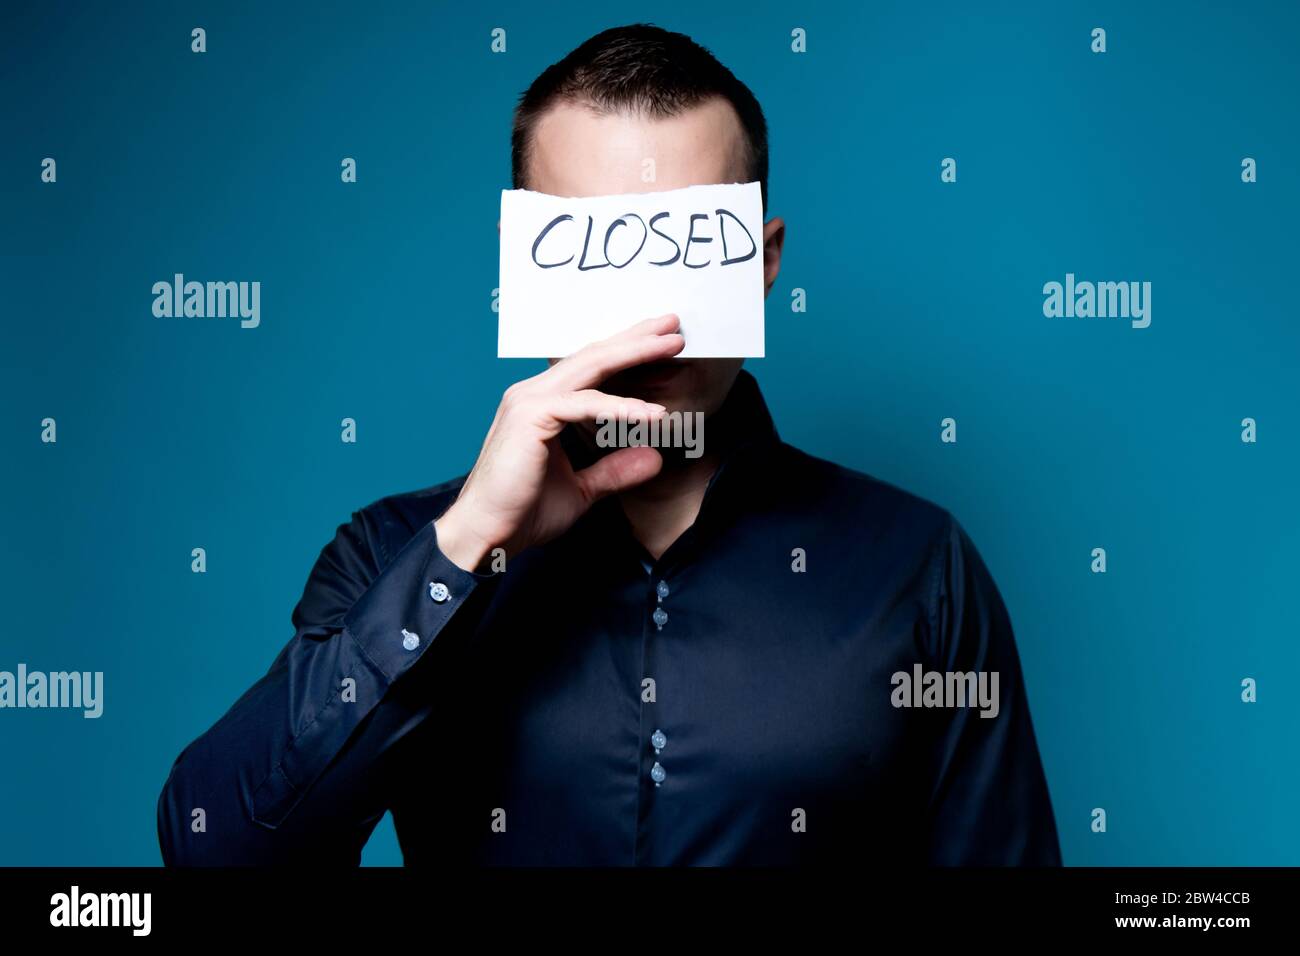 un homme en chemise bleue couvre son visage avec un panneau disant fermé Banque D'Images